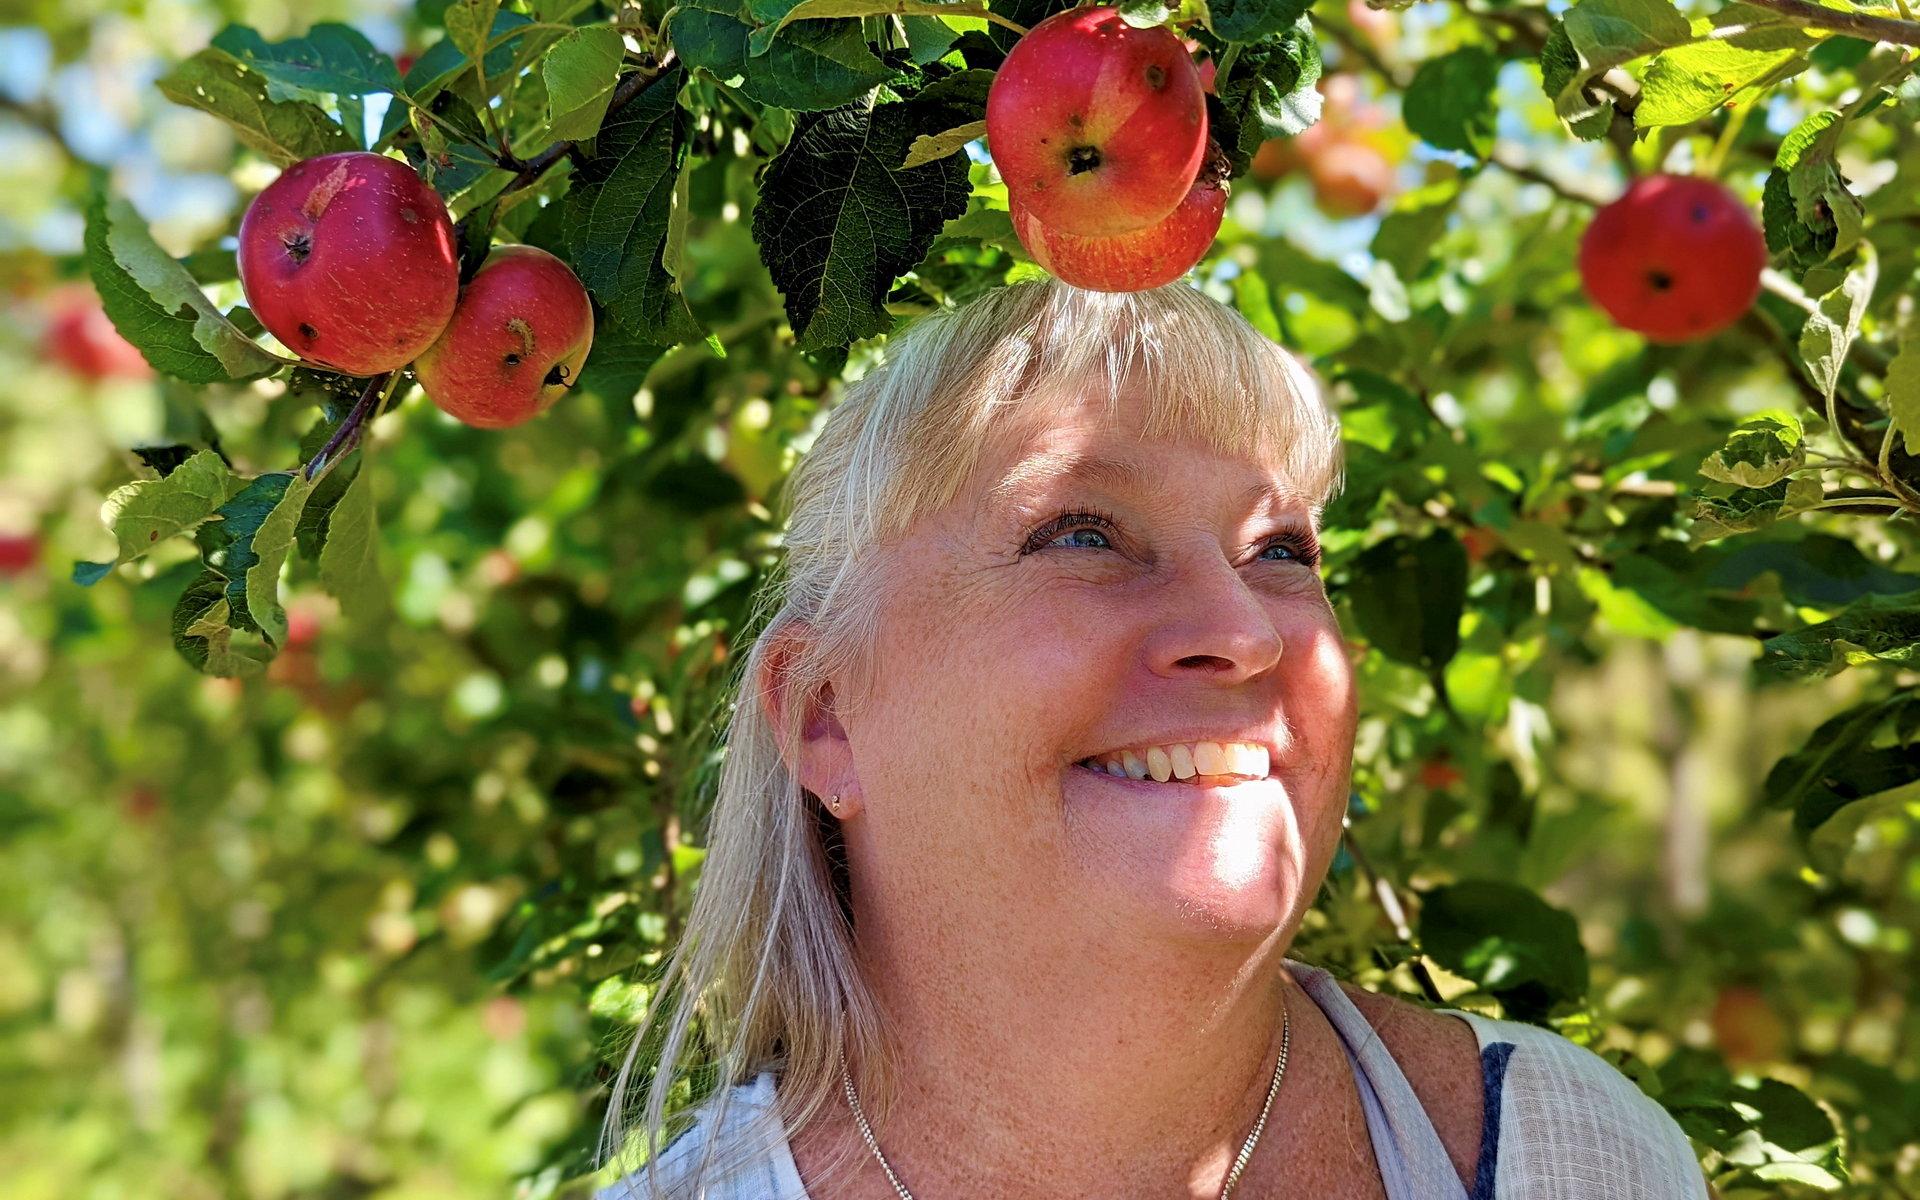 ”Förutom must och cider gör vi marmelad, chips och chutney av äpplena”, berättar Agneta Regnér.